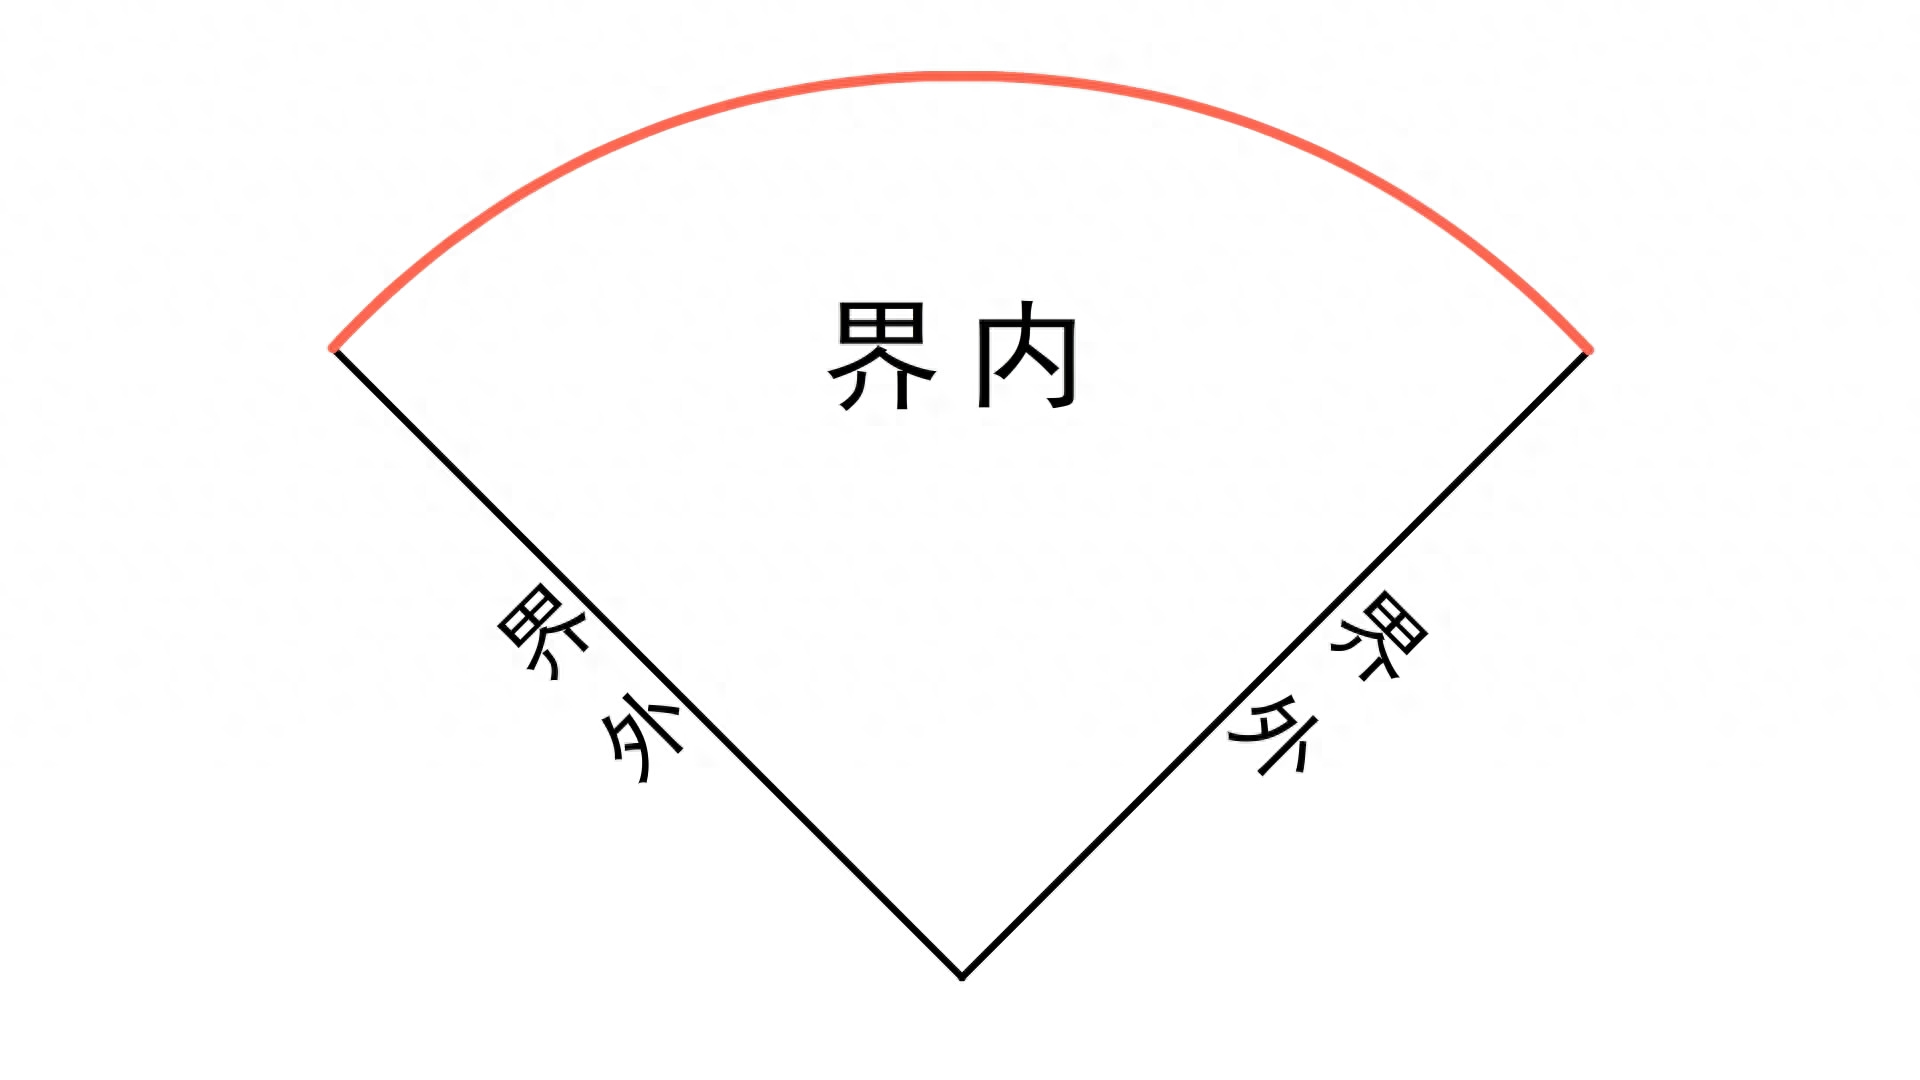 棒球的规则和玩示意图,图文介绍